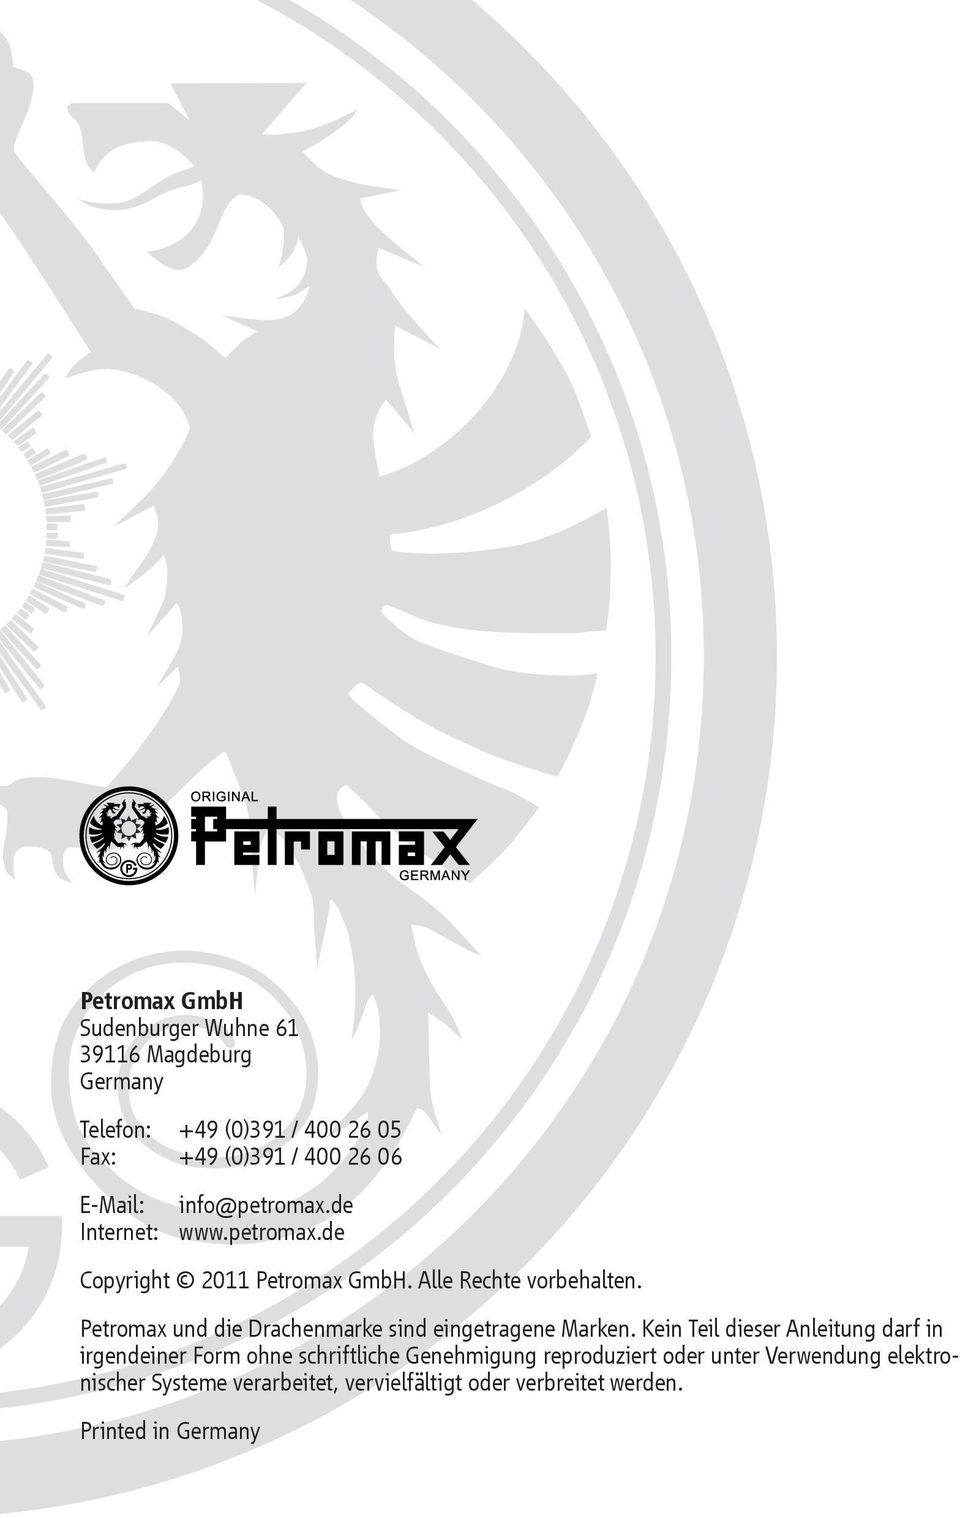 Petromax und die Drachenmarke sind eingetragene Marken.